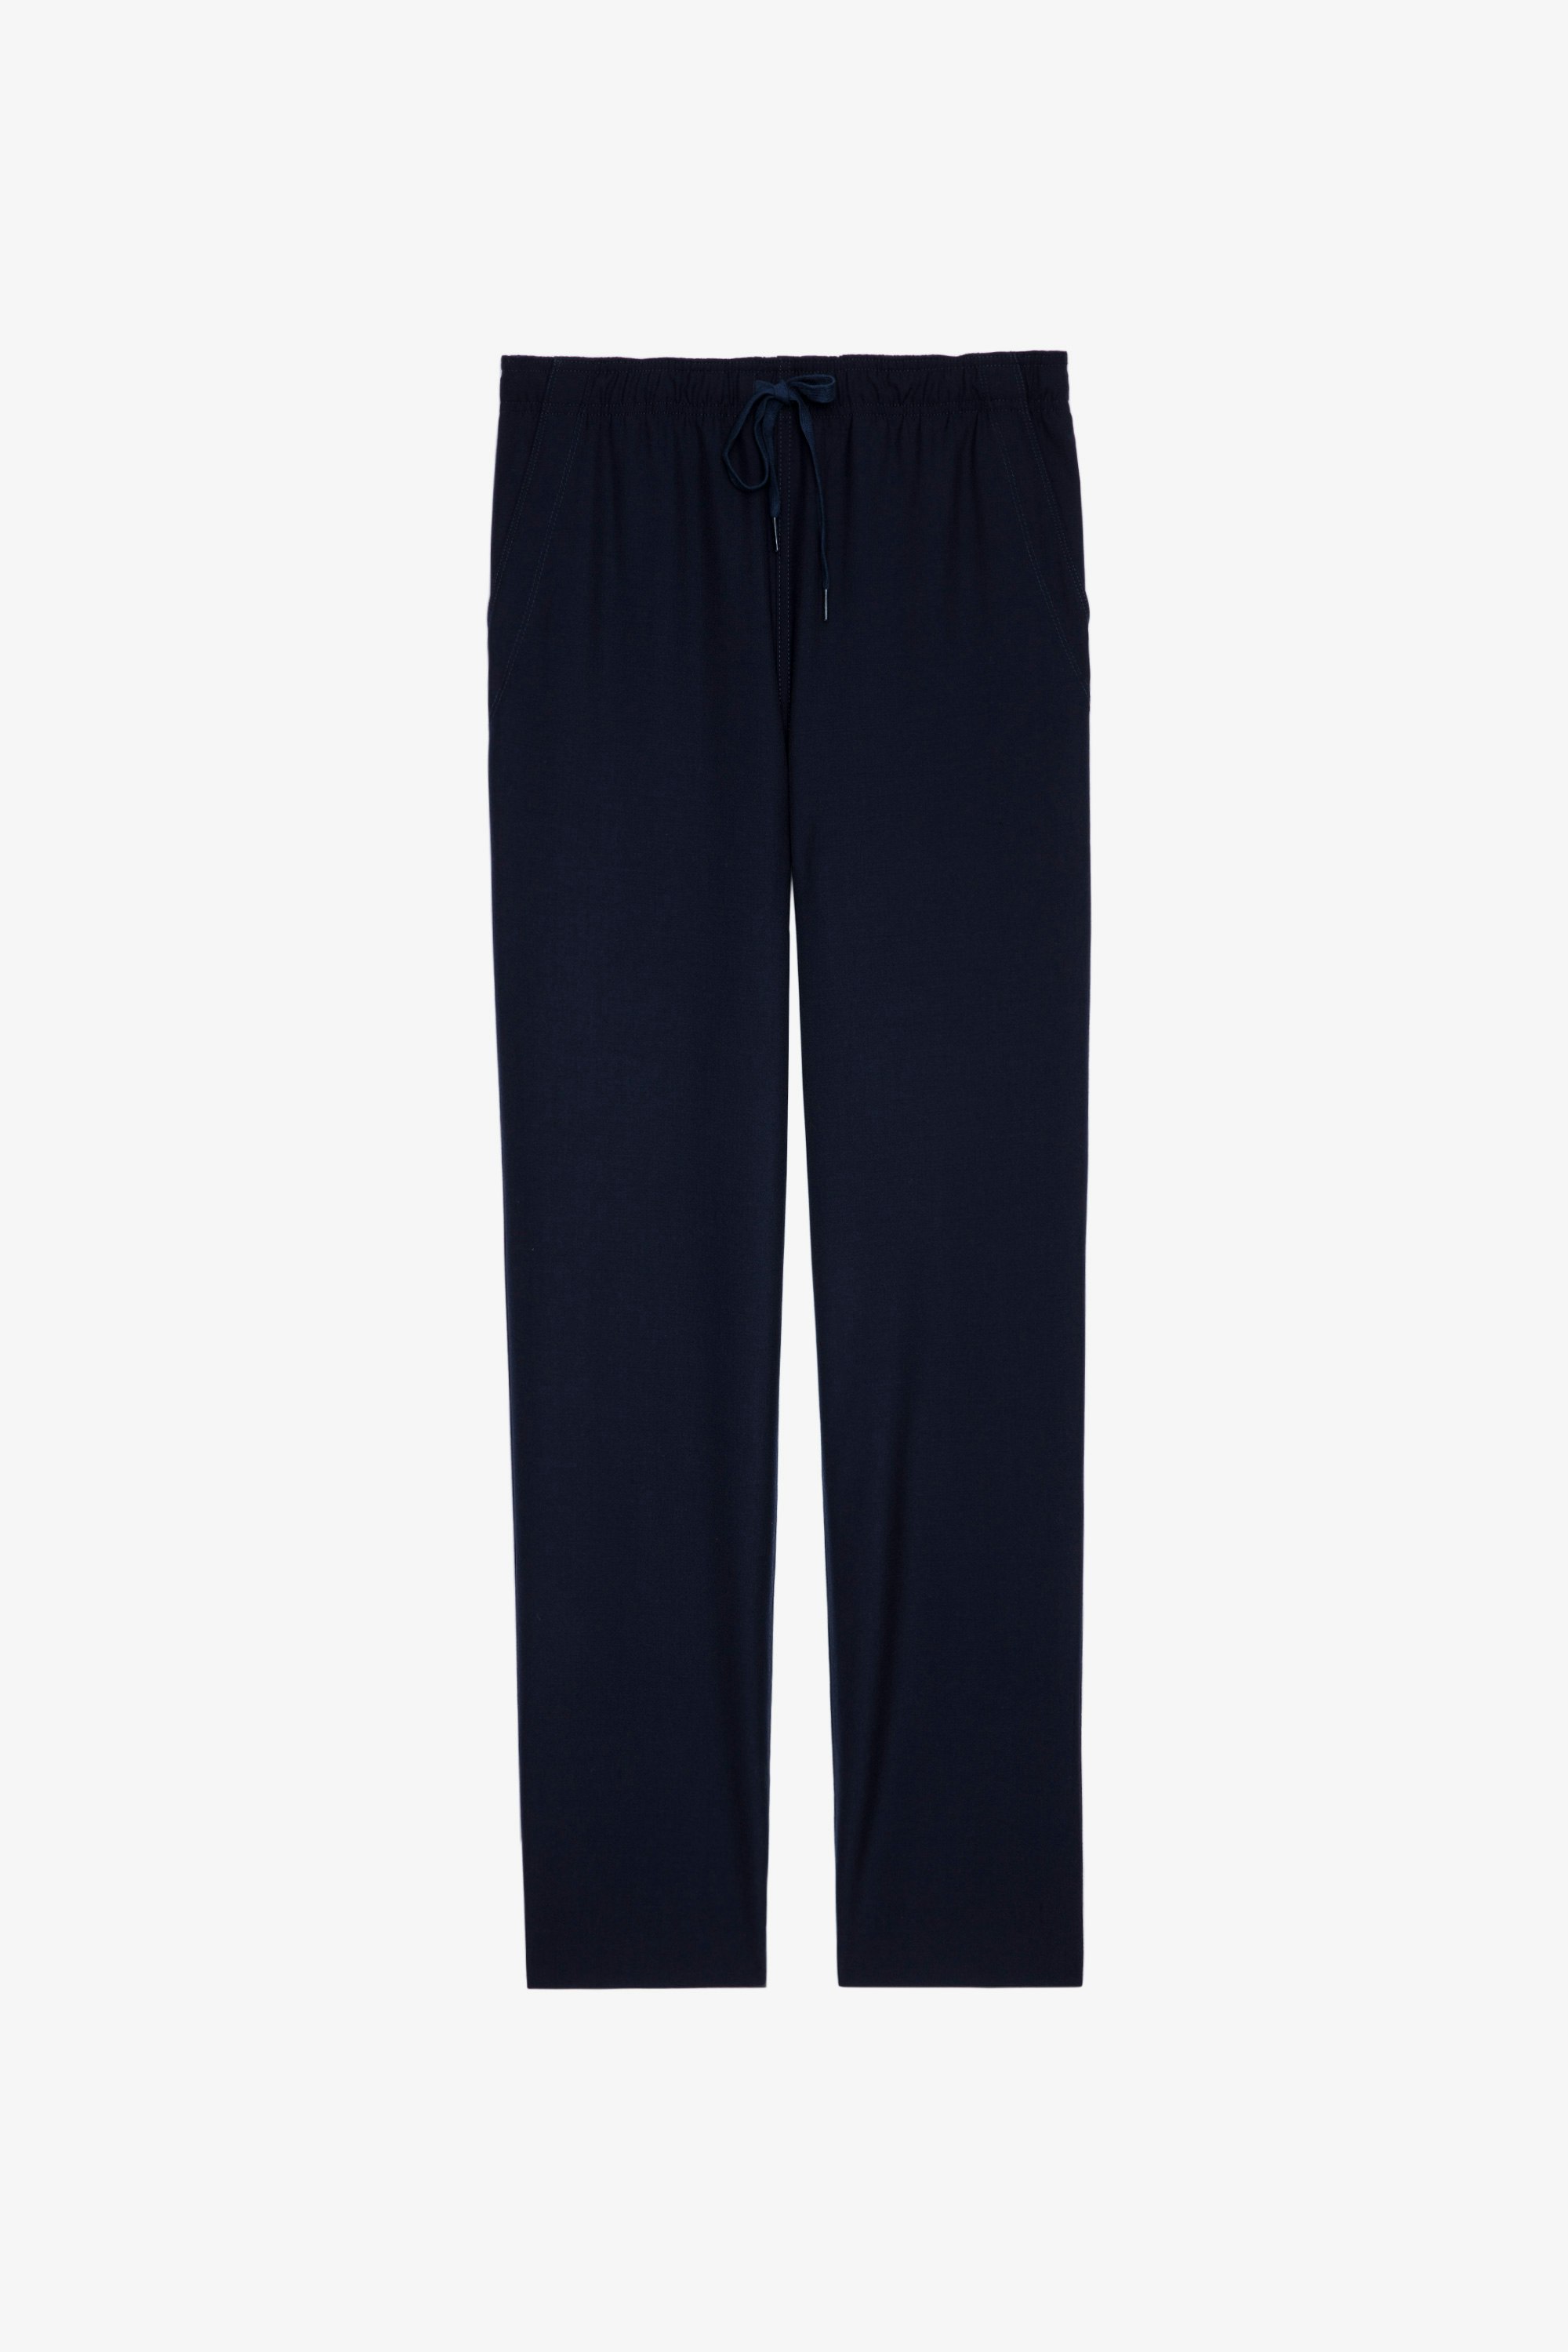 Pixel Trousers Men’s navy blue wool trousers 